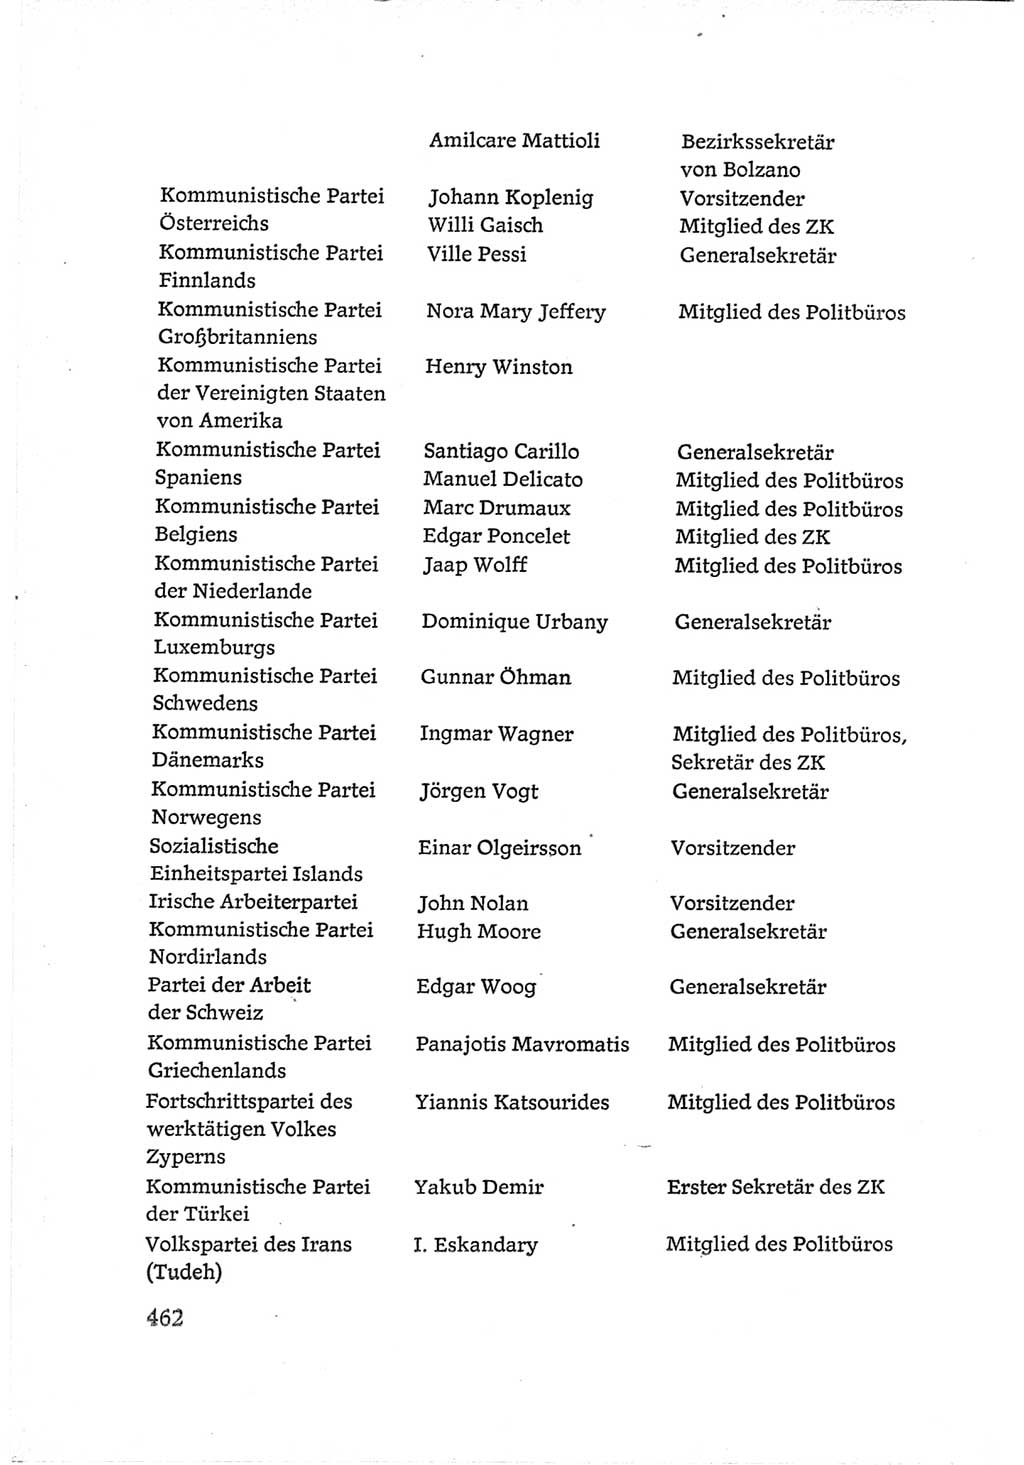 Protokoll der Verhandlungen des Ⅵ. Parteitages der Sozialistischen Einheitspartei Deutschlands (SED) [Deutsche Demokratische Republik (DDR)] 1963, Band Ⅳ, Seite 462 (Prot. Verh. Ⅵ. PT SED DDR 1963, Bd. Ⅳ, S. 462)